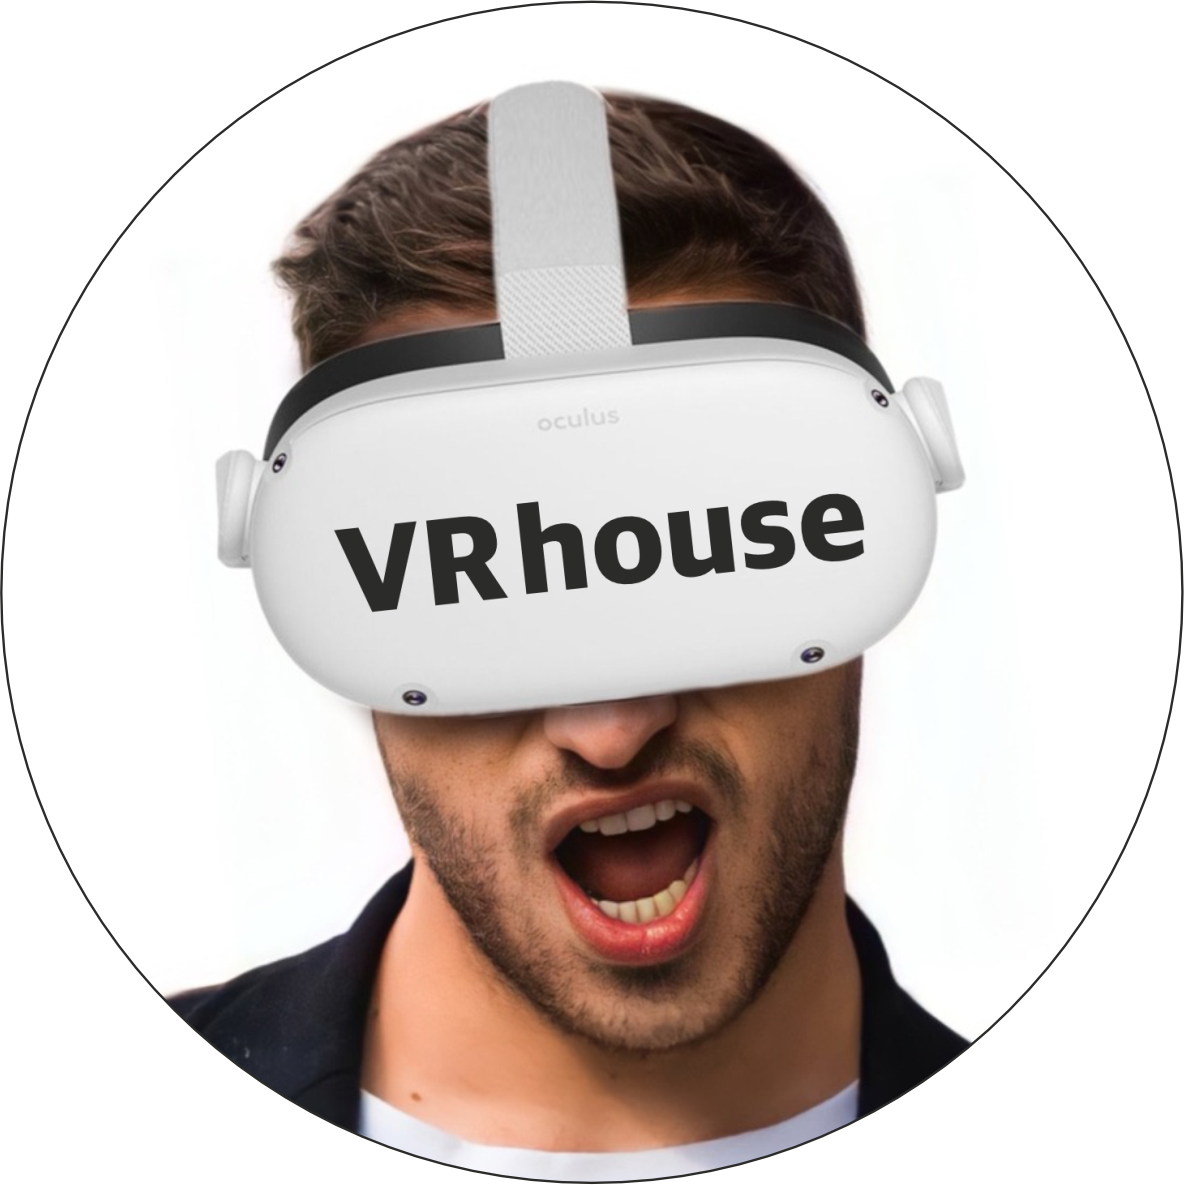 VR house